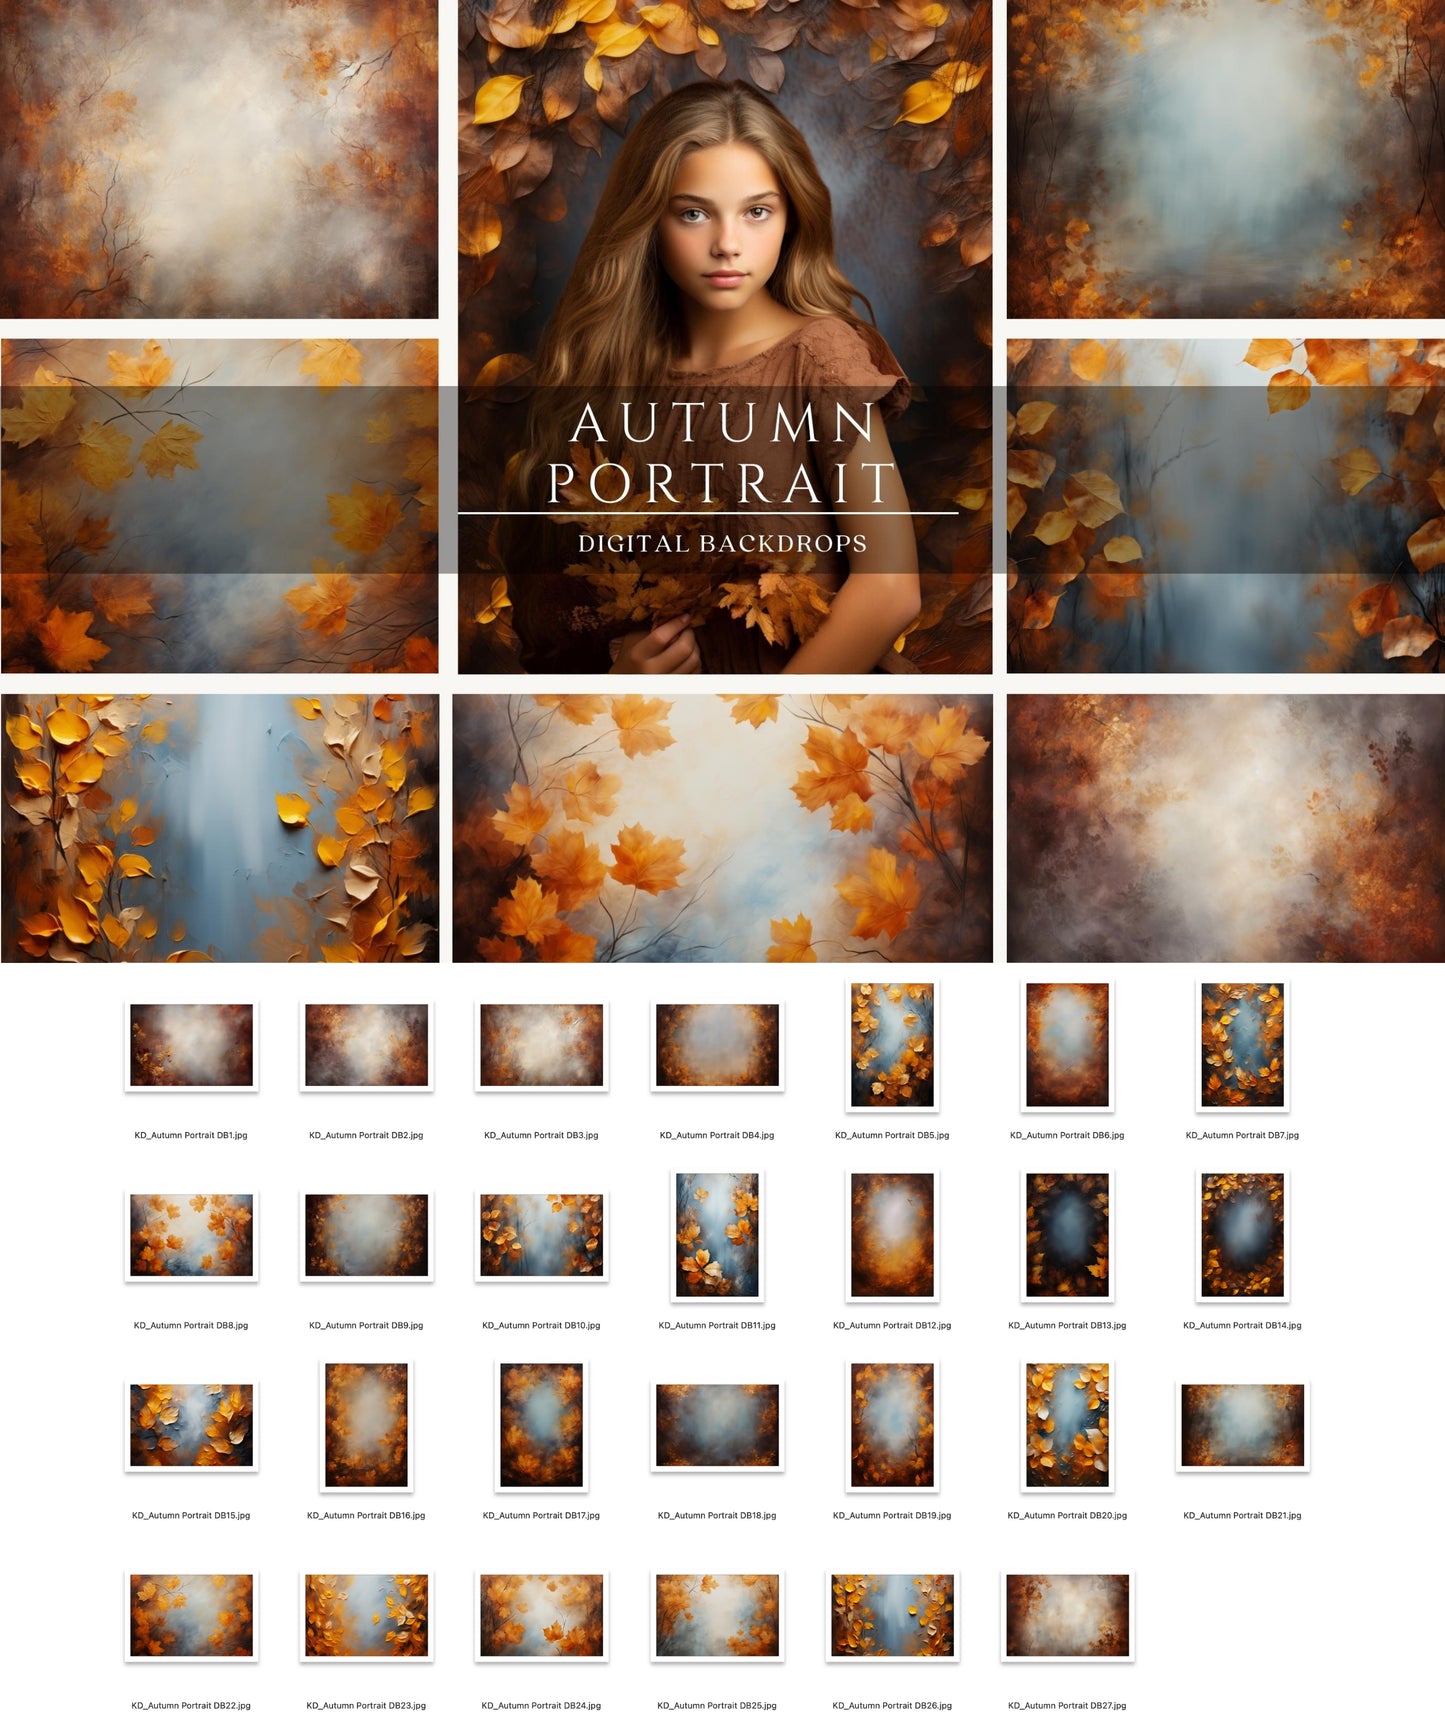 Autumn Portrait Digital Backdrops